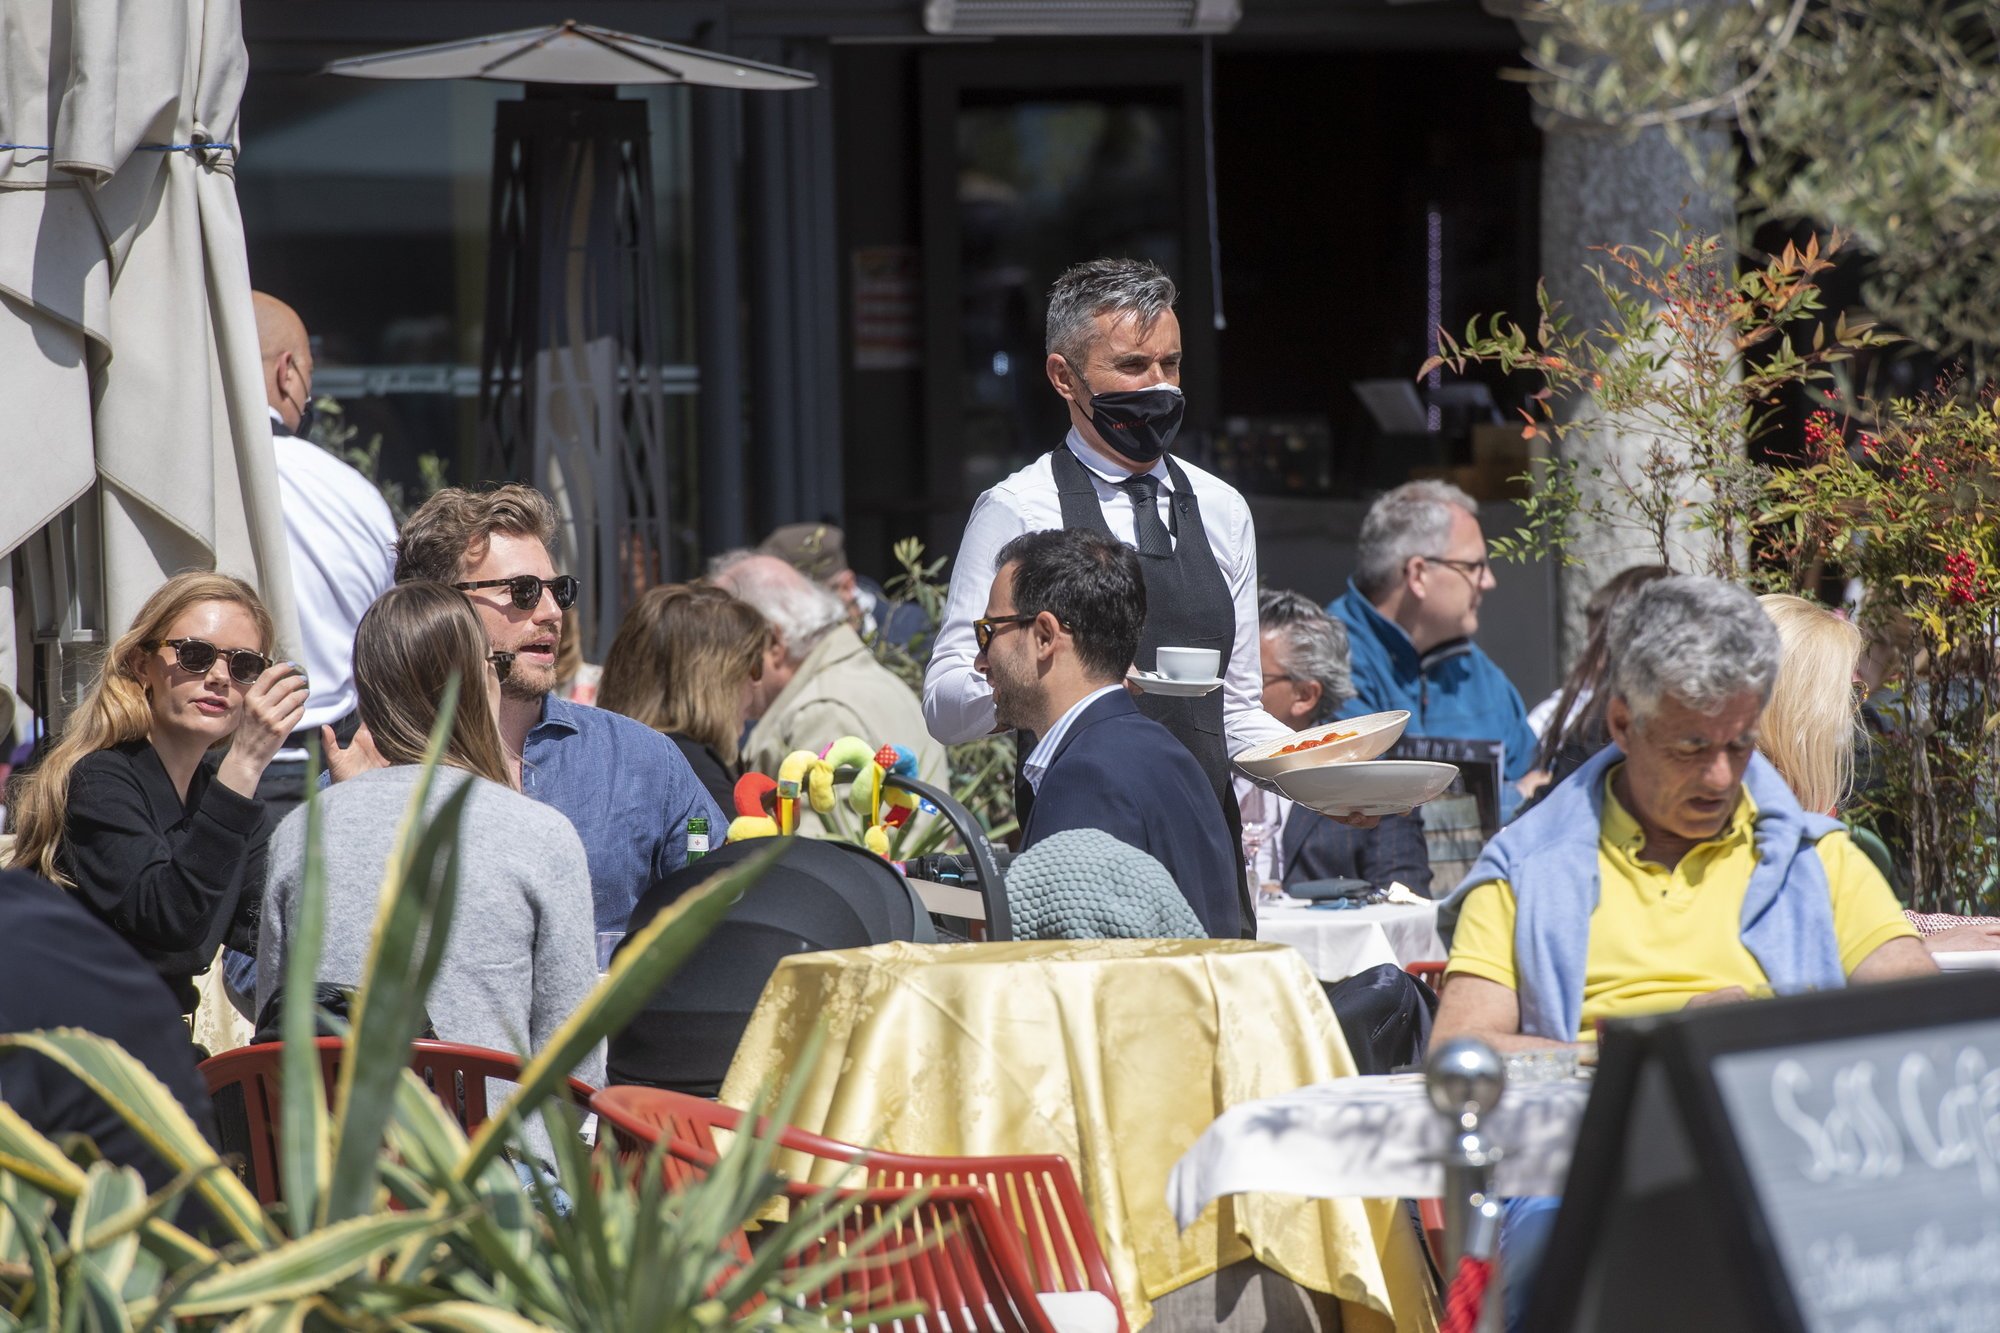 Une terrasse à Lugano en temps de pandémie: les clients peuvent-ils être perçus comme une menace?